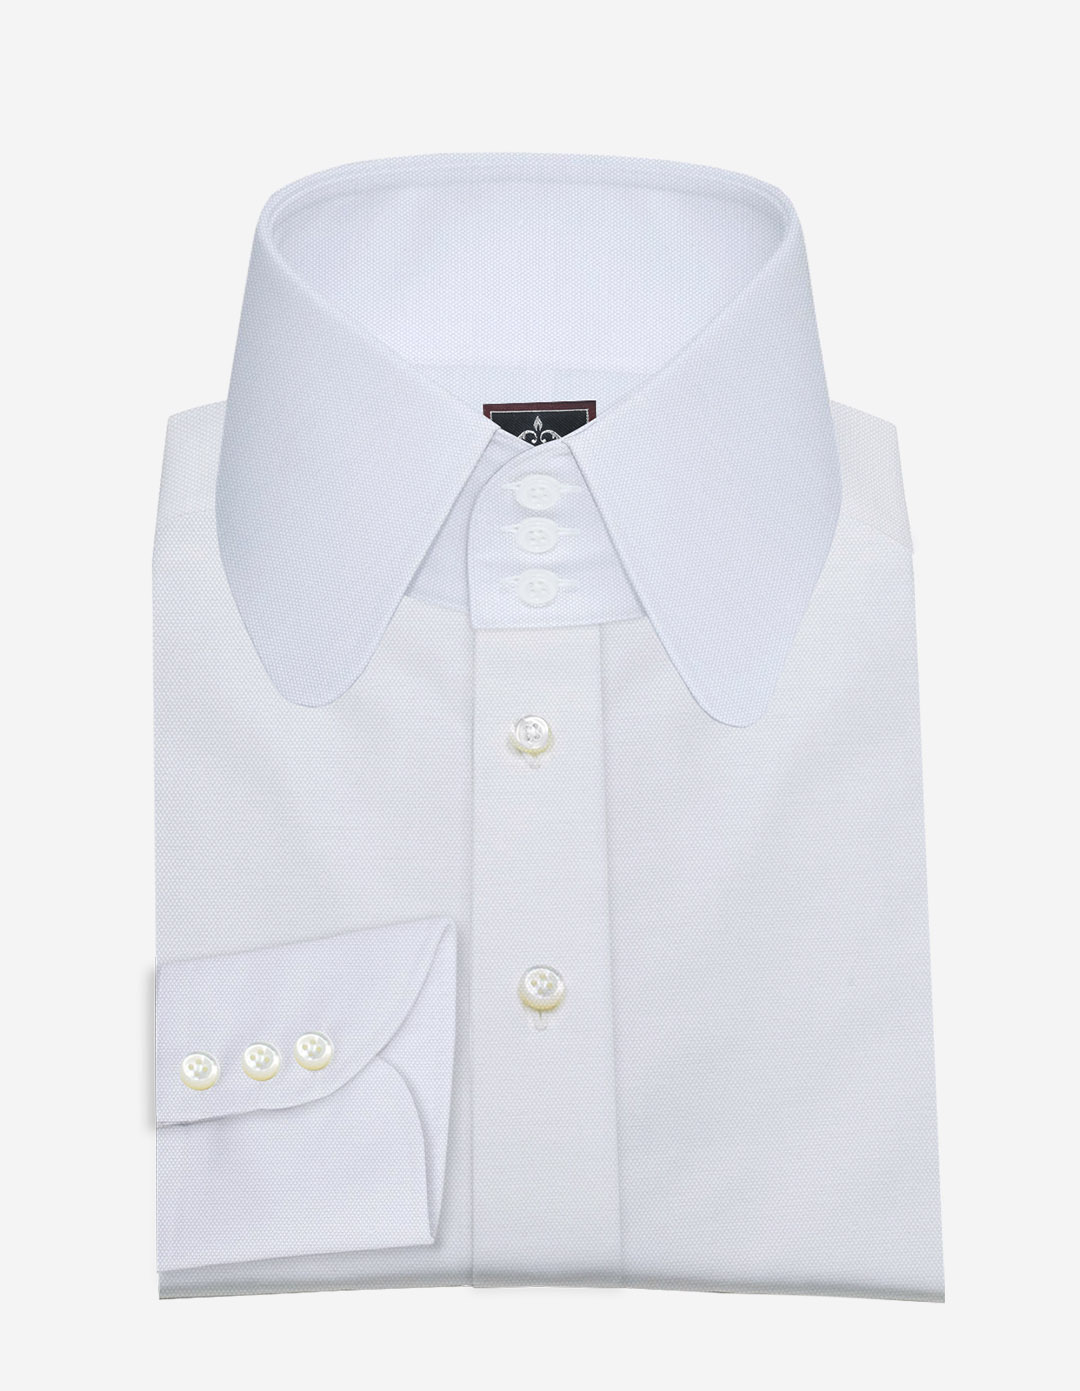 https://tailormade-shirts.com/wp-content/uploads/2022/12/high-collar-dress-shirt.jpg